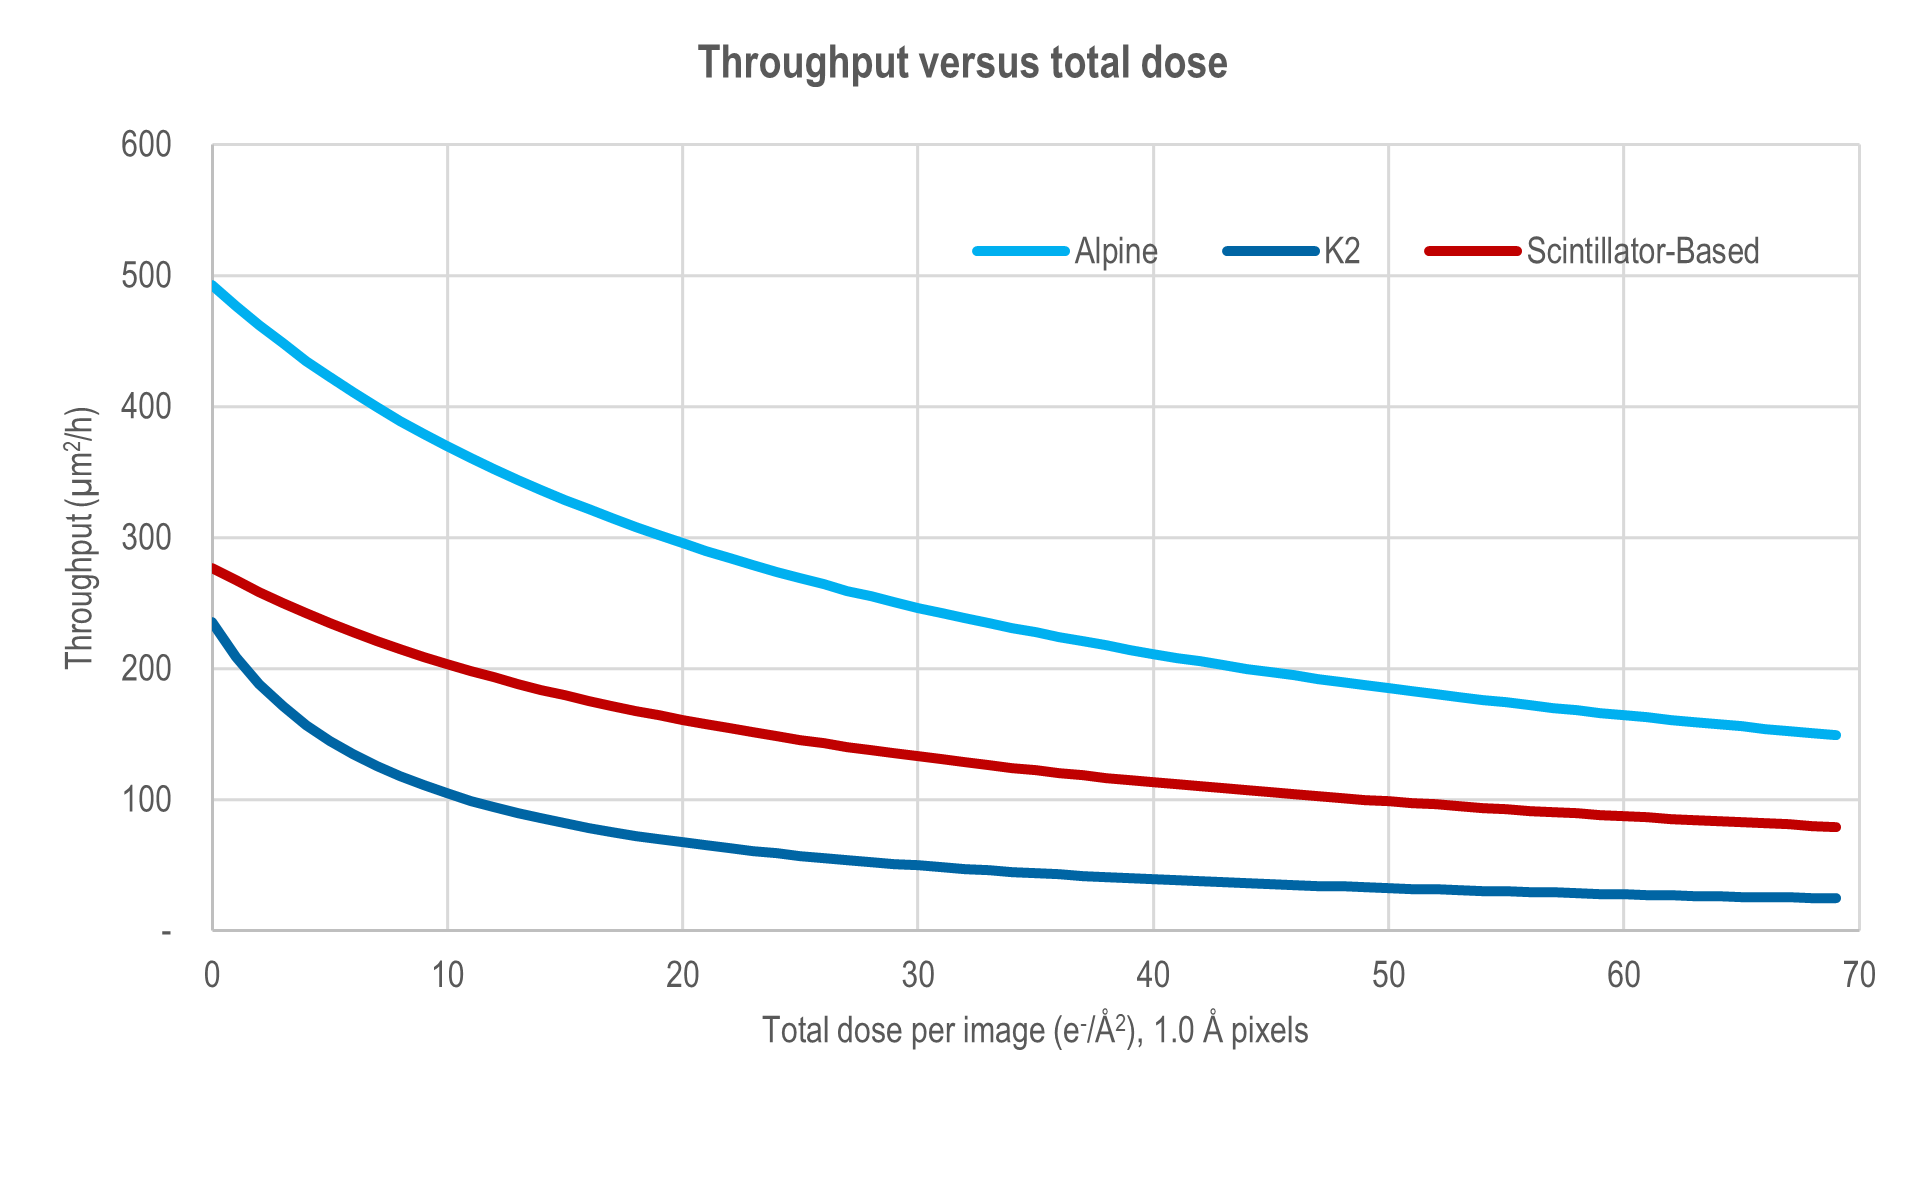 Throughput versus total dose comparison